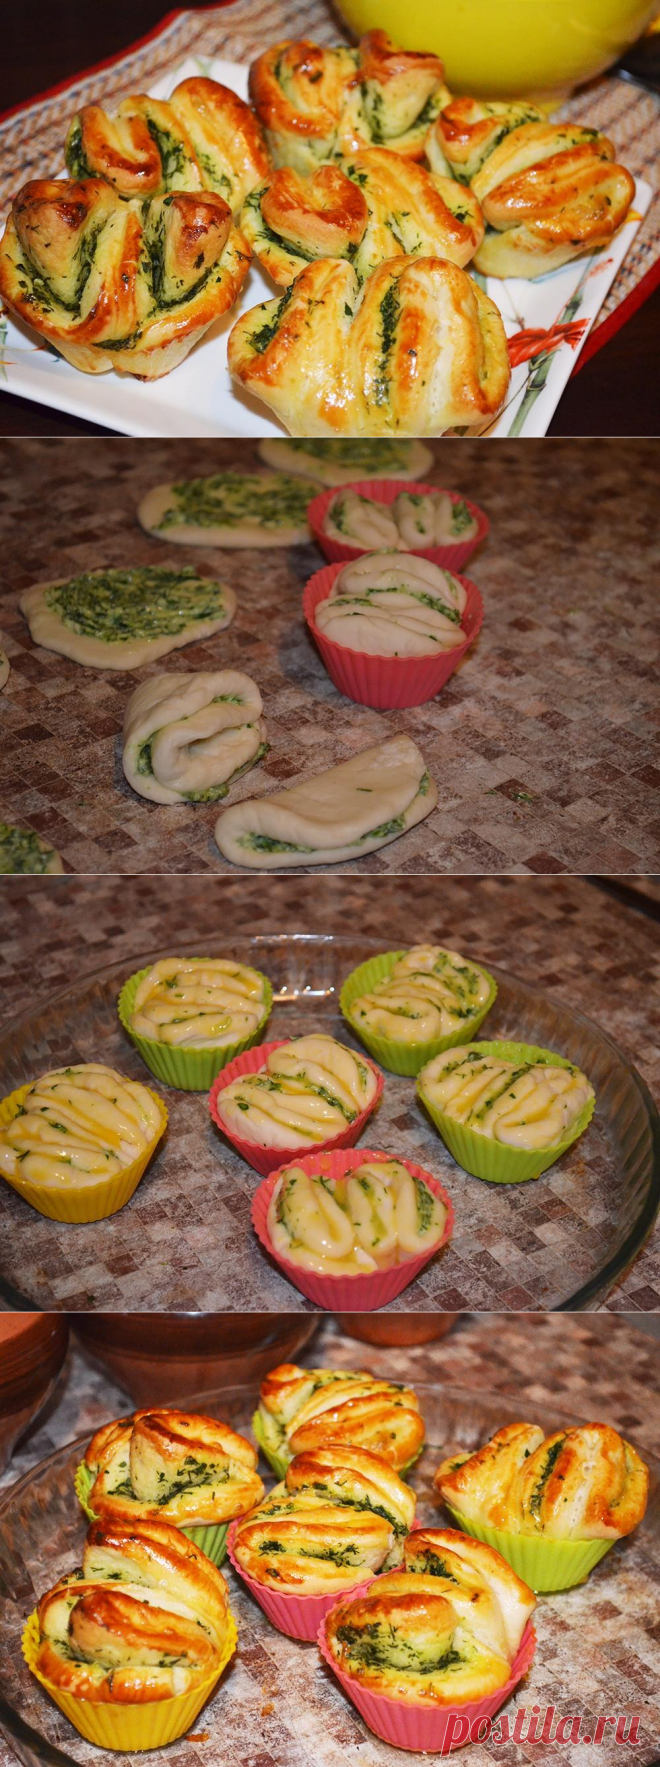 Быстрые булочки с чесноком и зеленью - пошаговый рецепт с фото - как приготовить - ингредиенты, состав, время приготовления